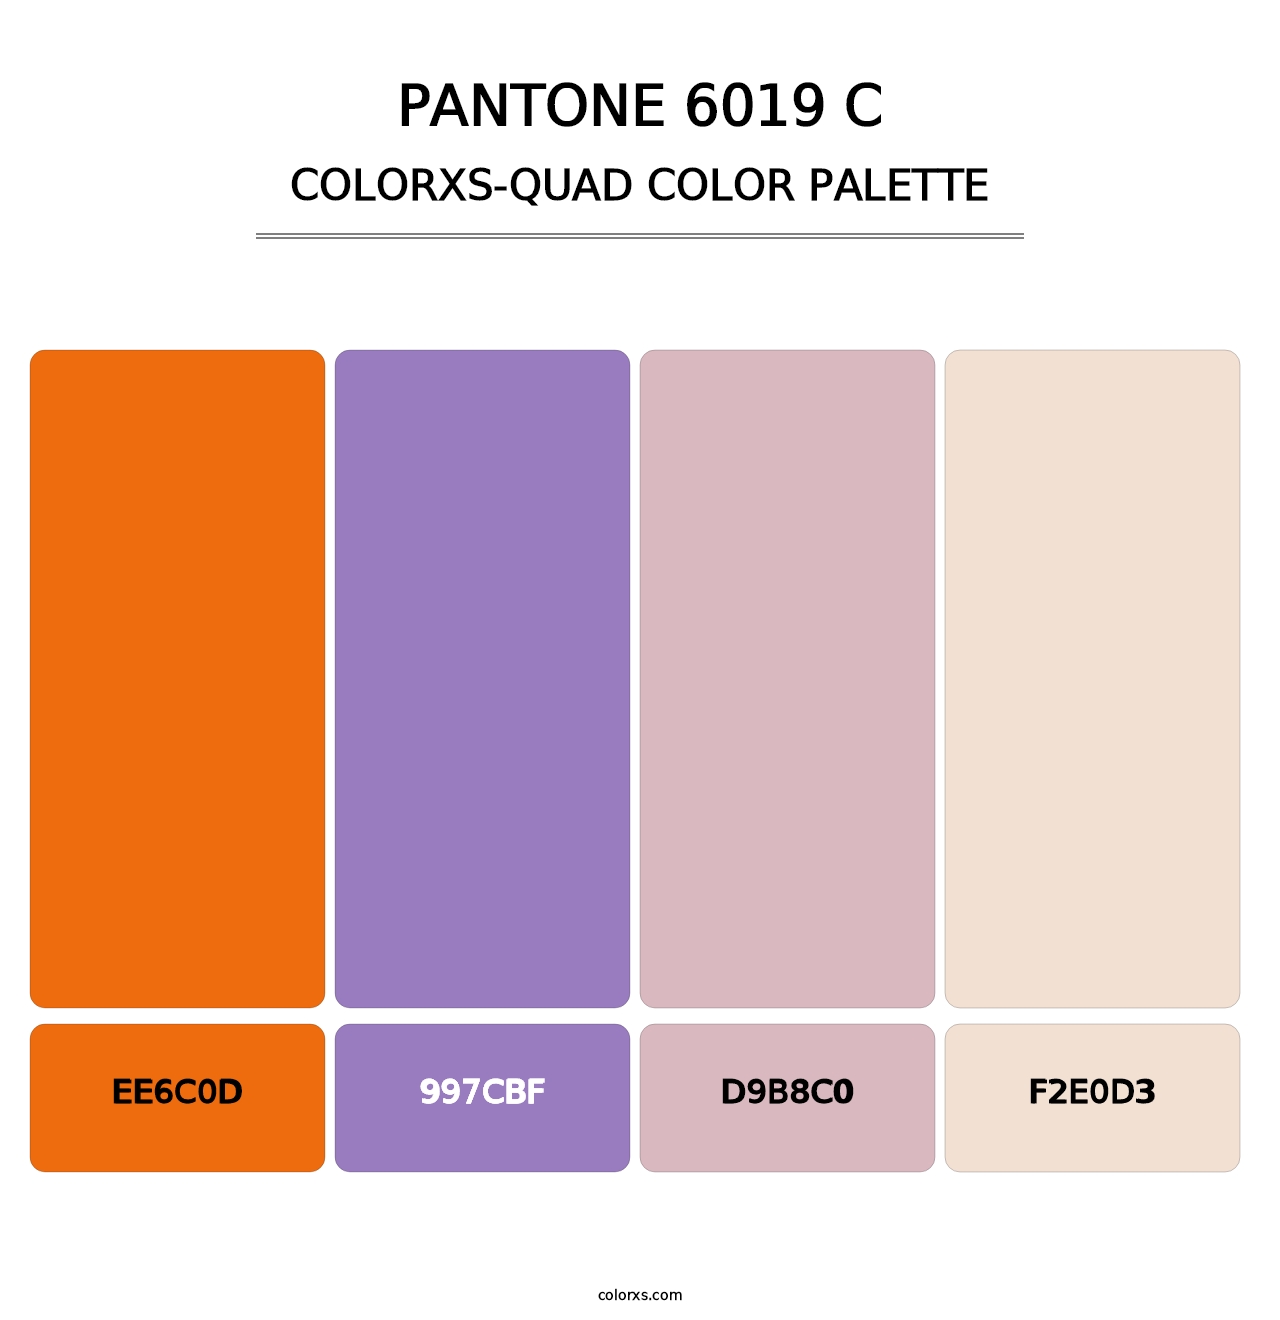 PANTONE 6019 C - Colorxs Quad Palette